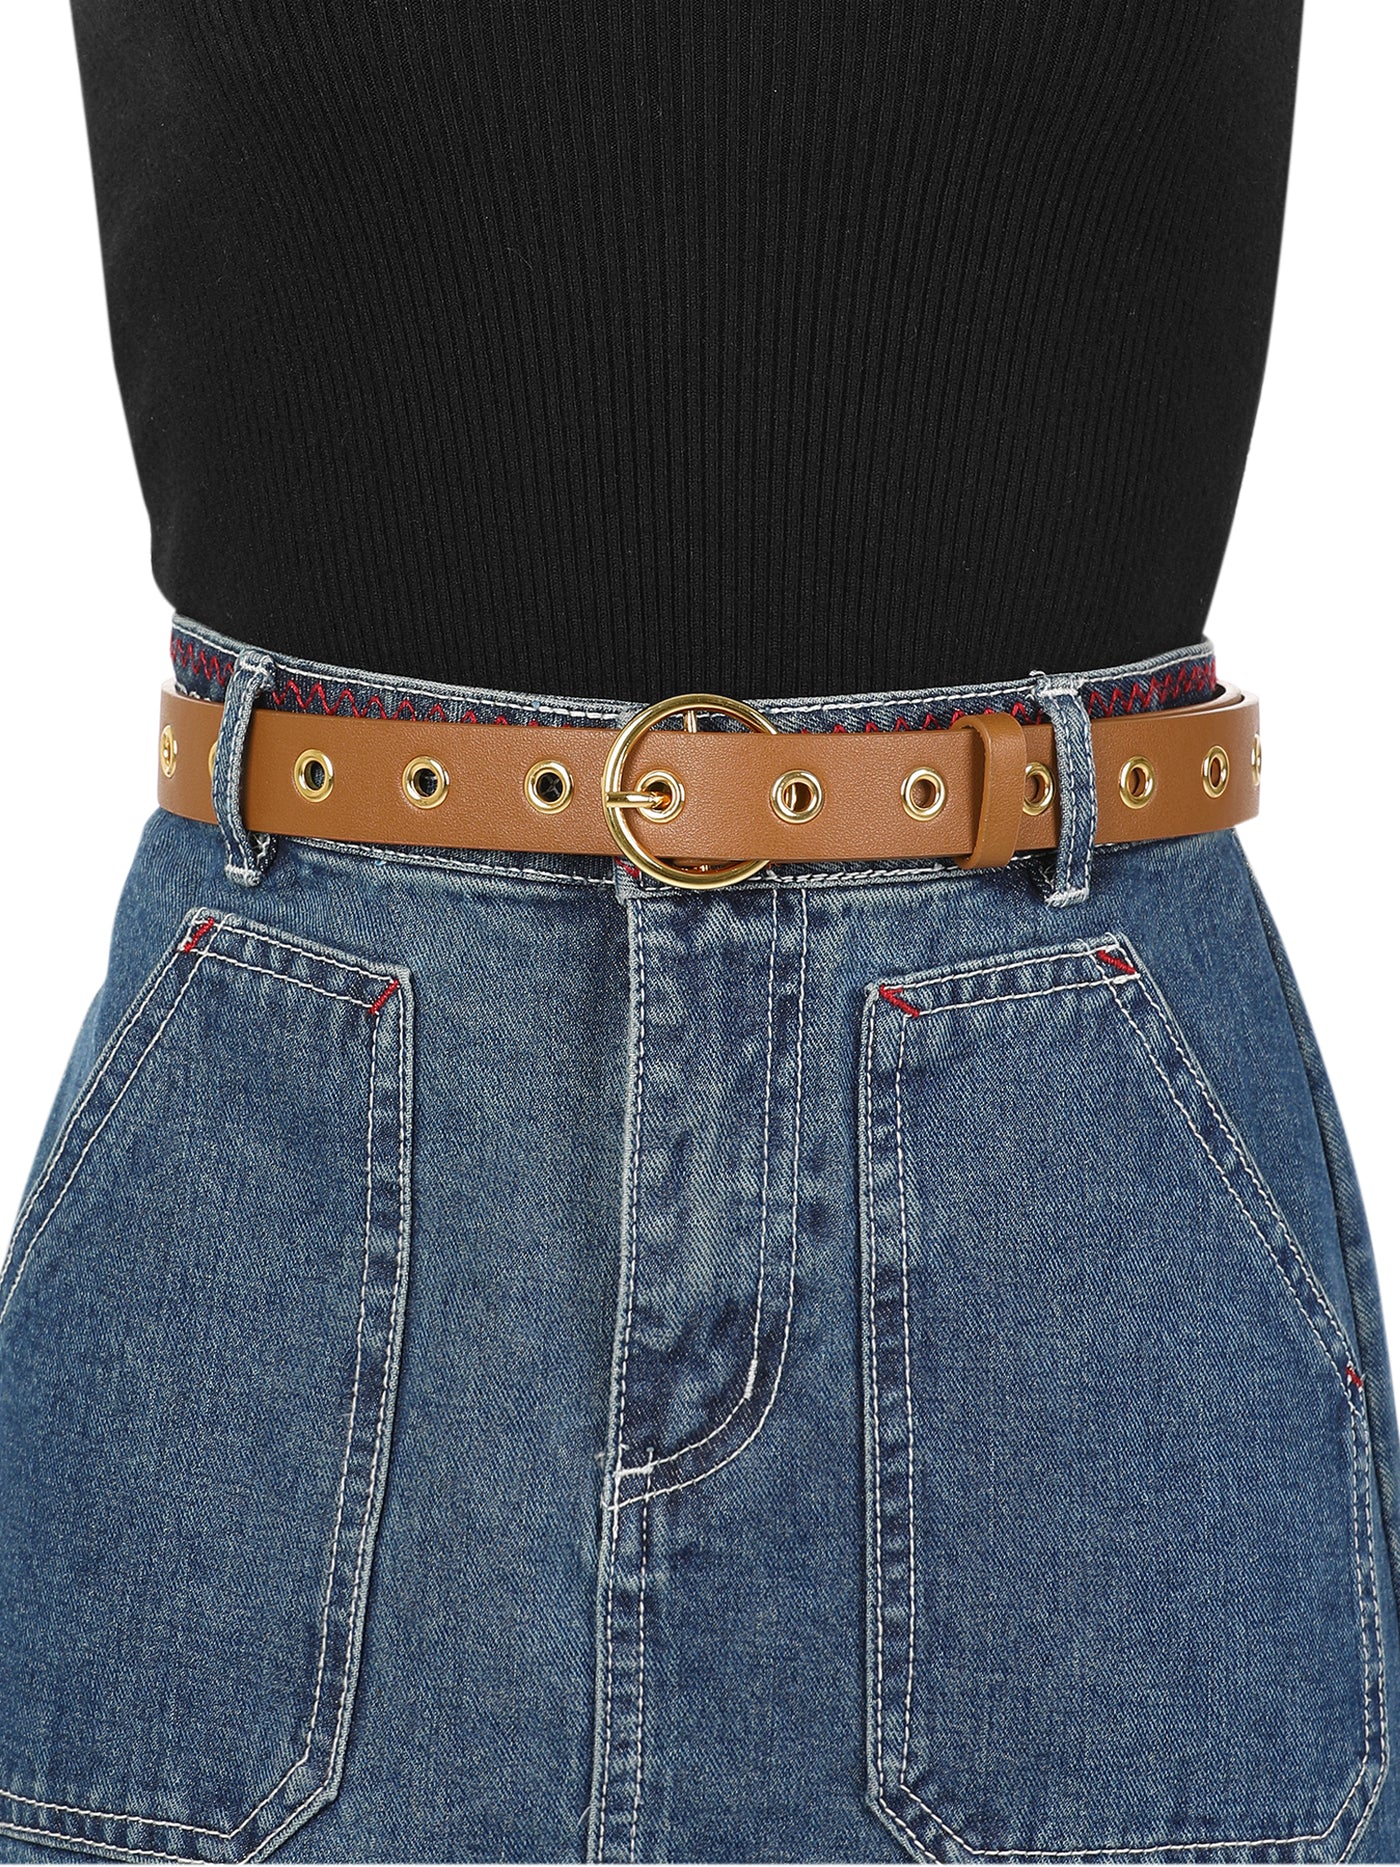 Allegra K Womens Grommet Belt Faux Leather Single Pin Buckle Punk Belts for Jeans Pants